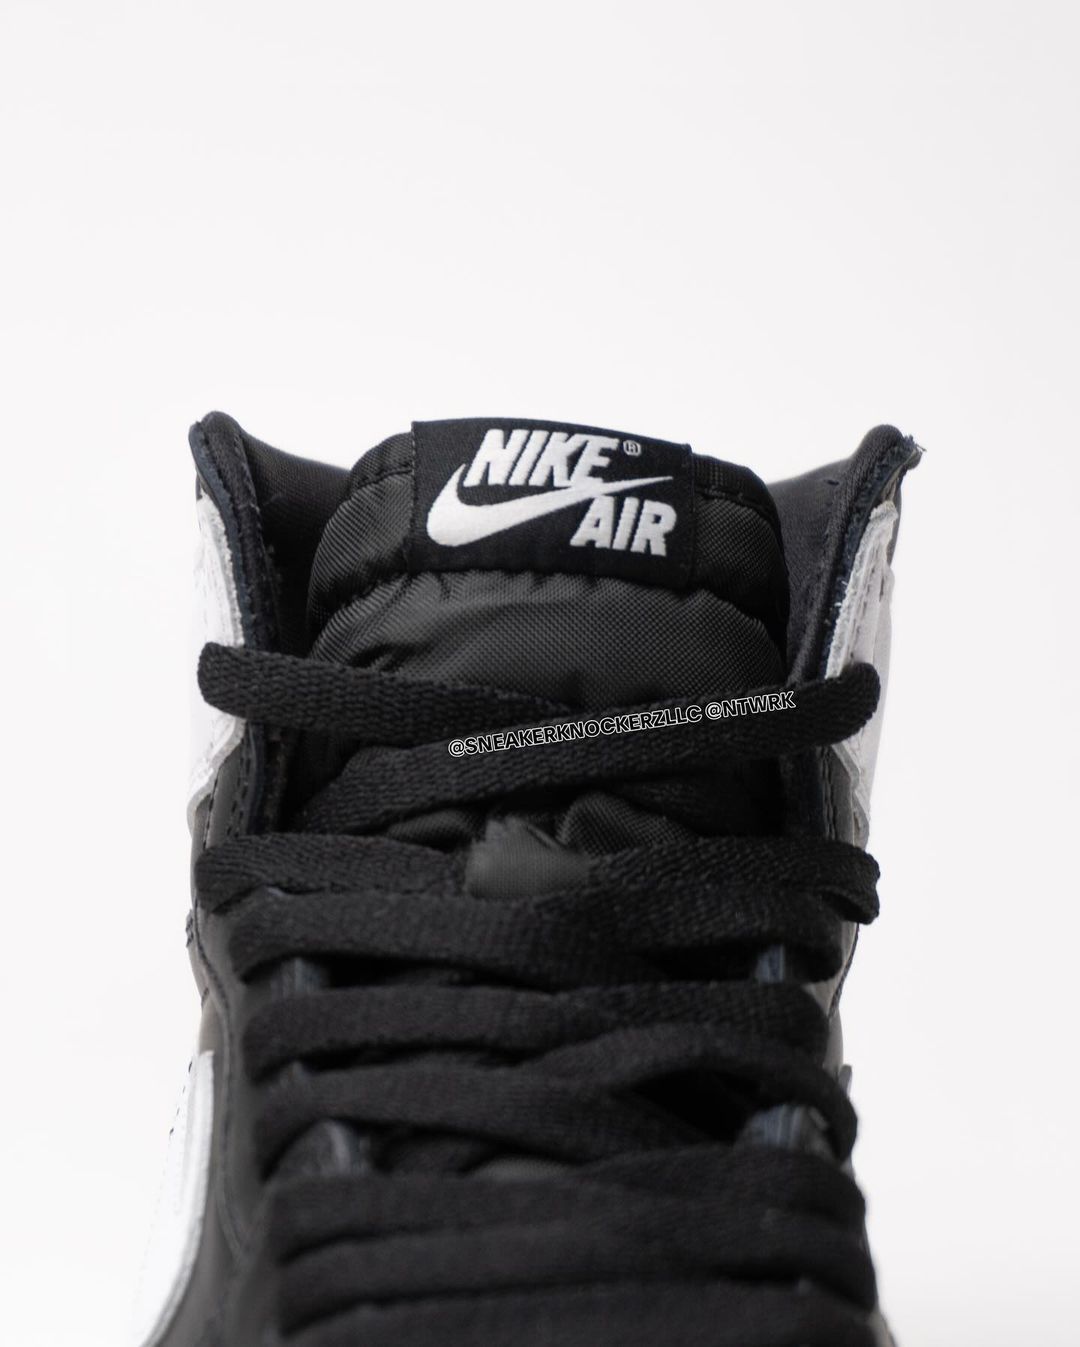 The Air Jordan 1 High OG Black/White